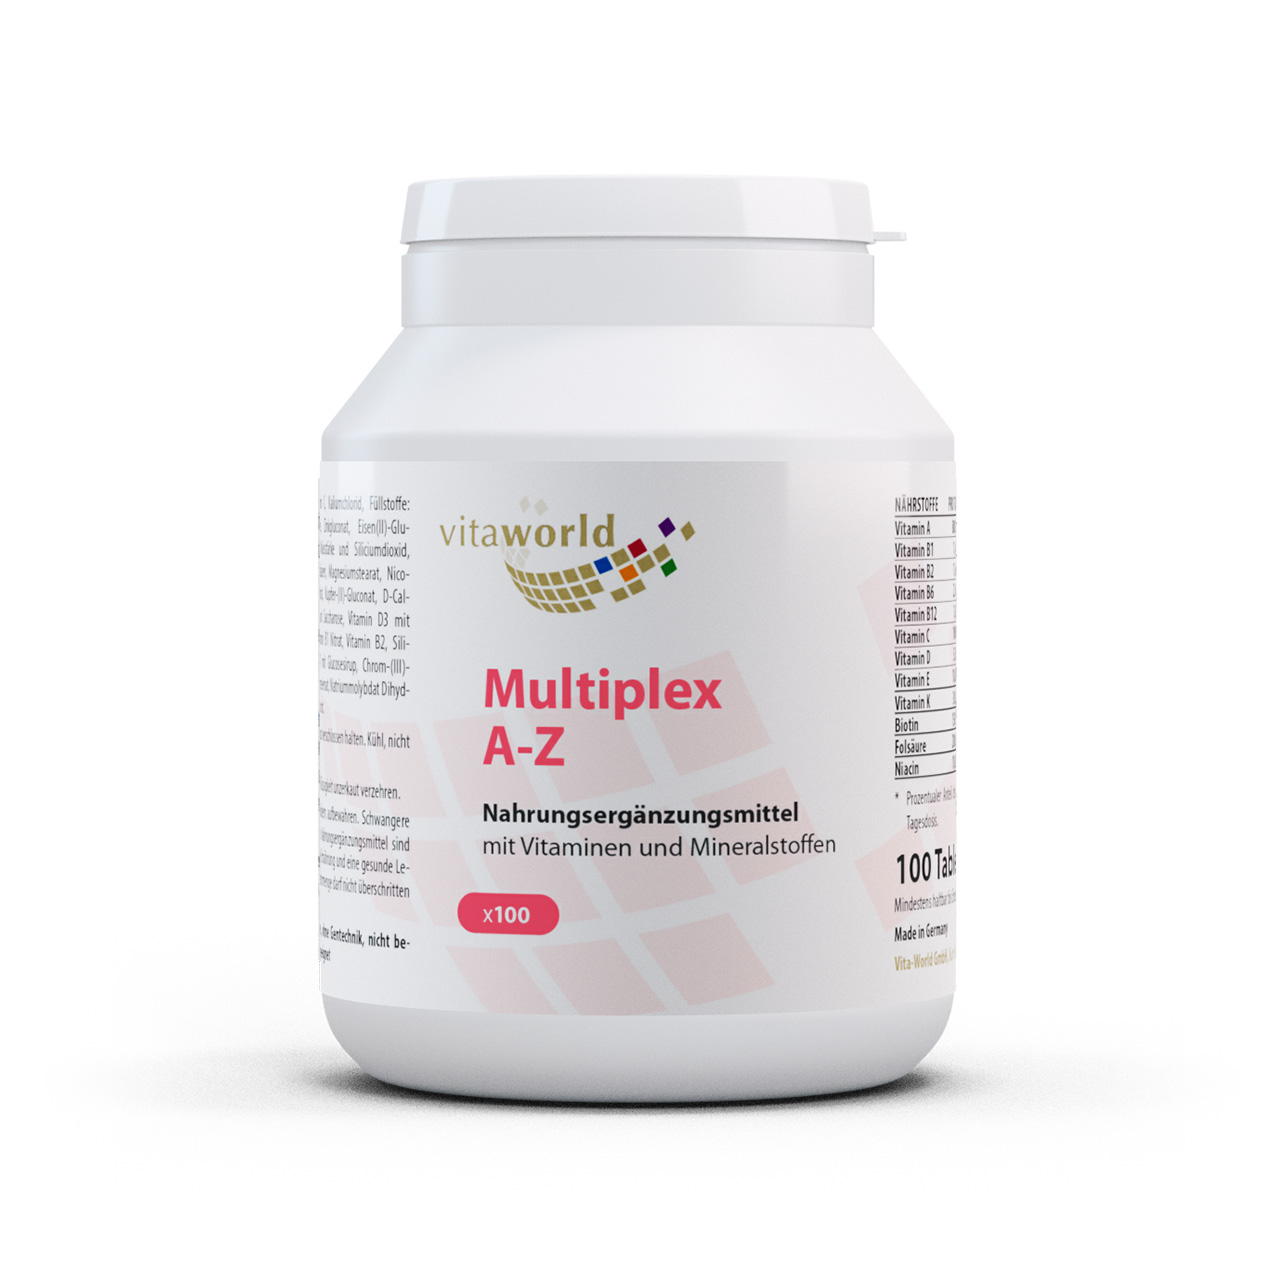 Vita World Multiplex A-Z Multivitamin | 100 Tabletten | ausgewogene Vitaminformel mit 24 Wirkstoffen | gluten- und laktosefrei